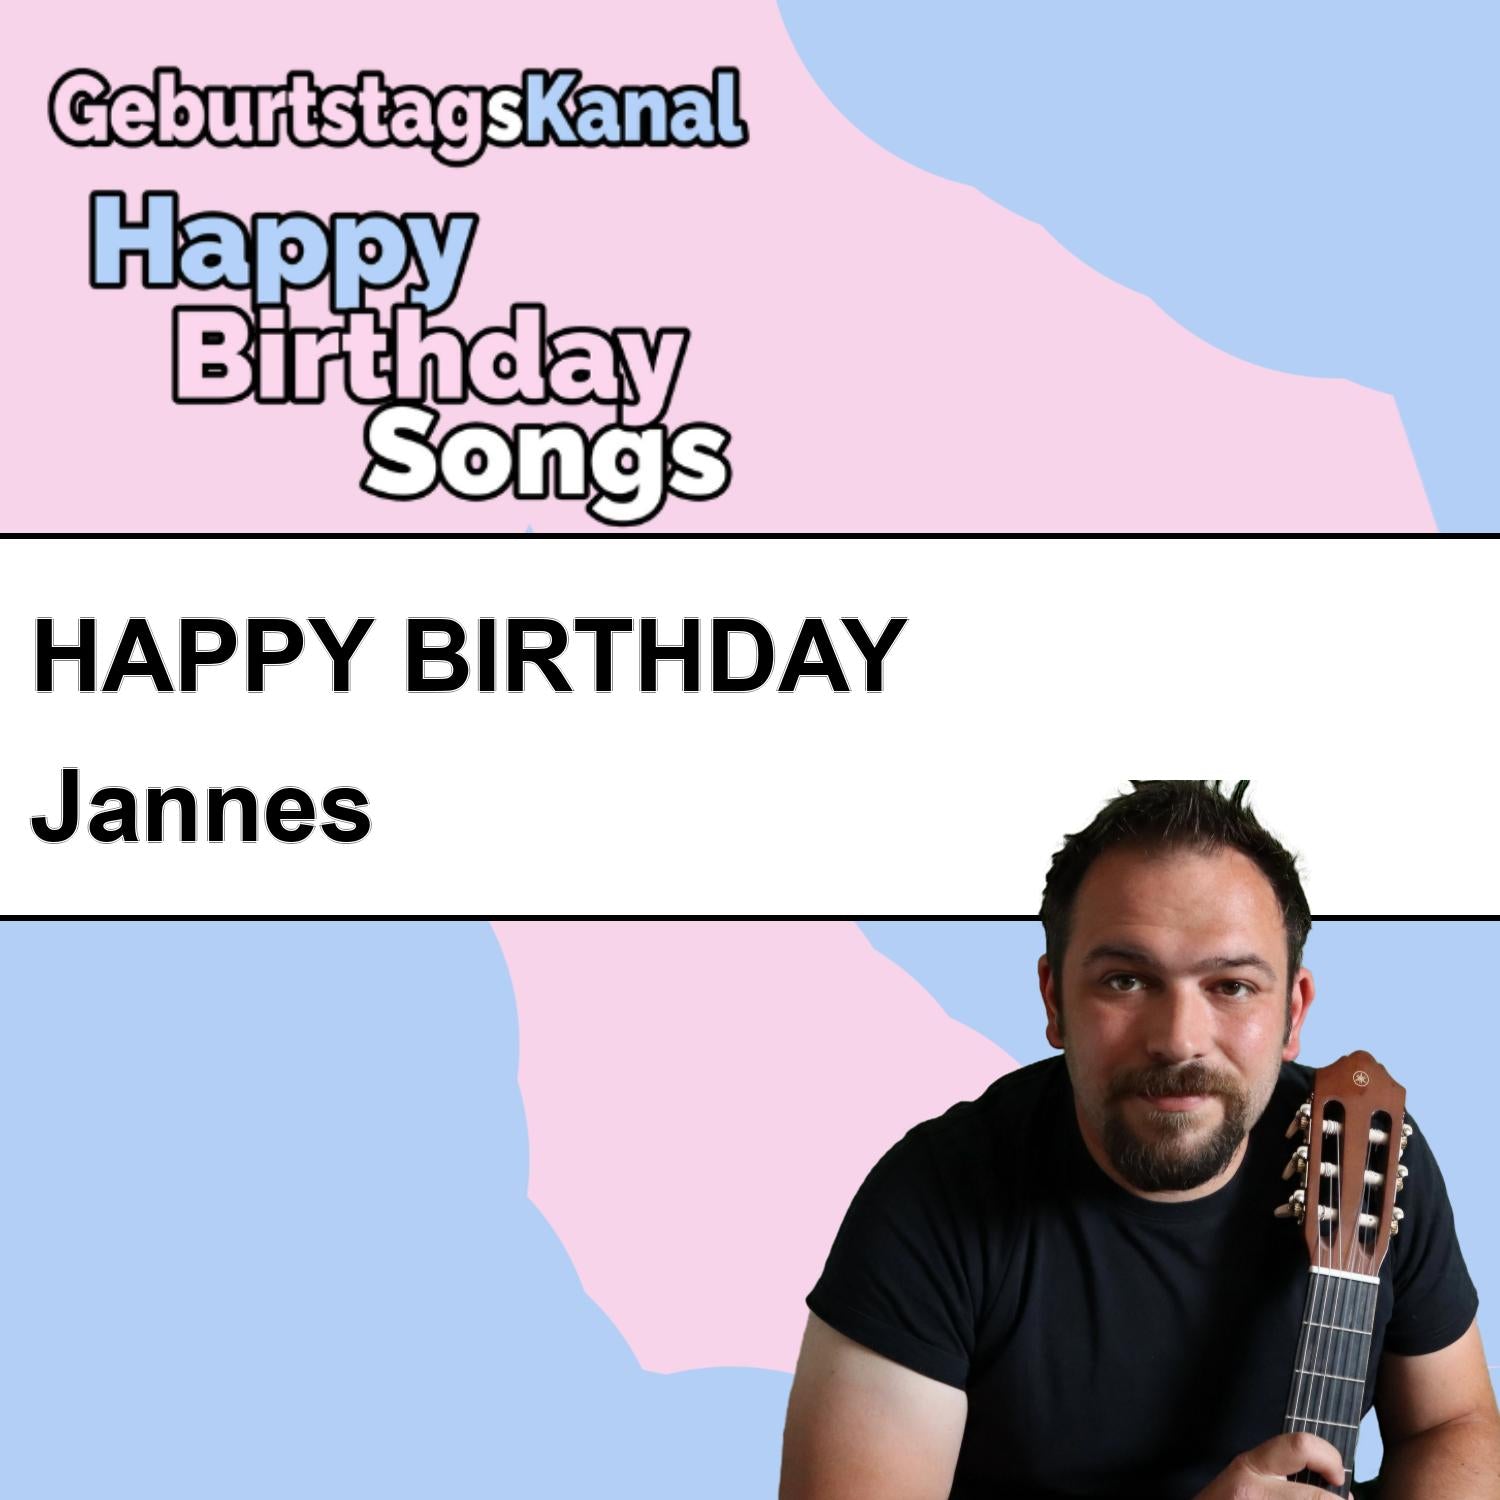 Produktbild Happy Birthday to you Jannes mit Wunschgrußbotschaft